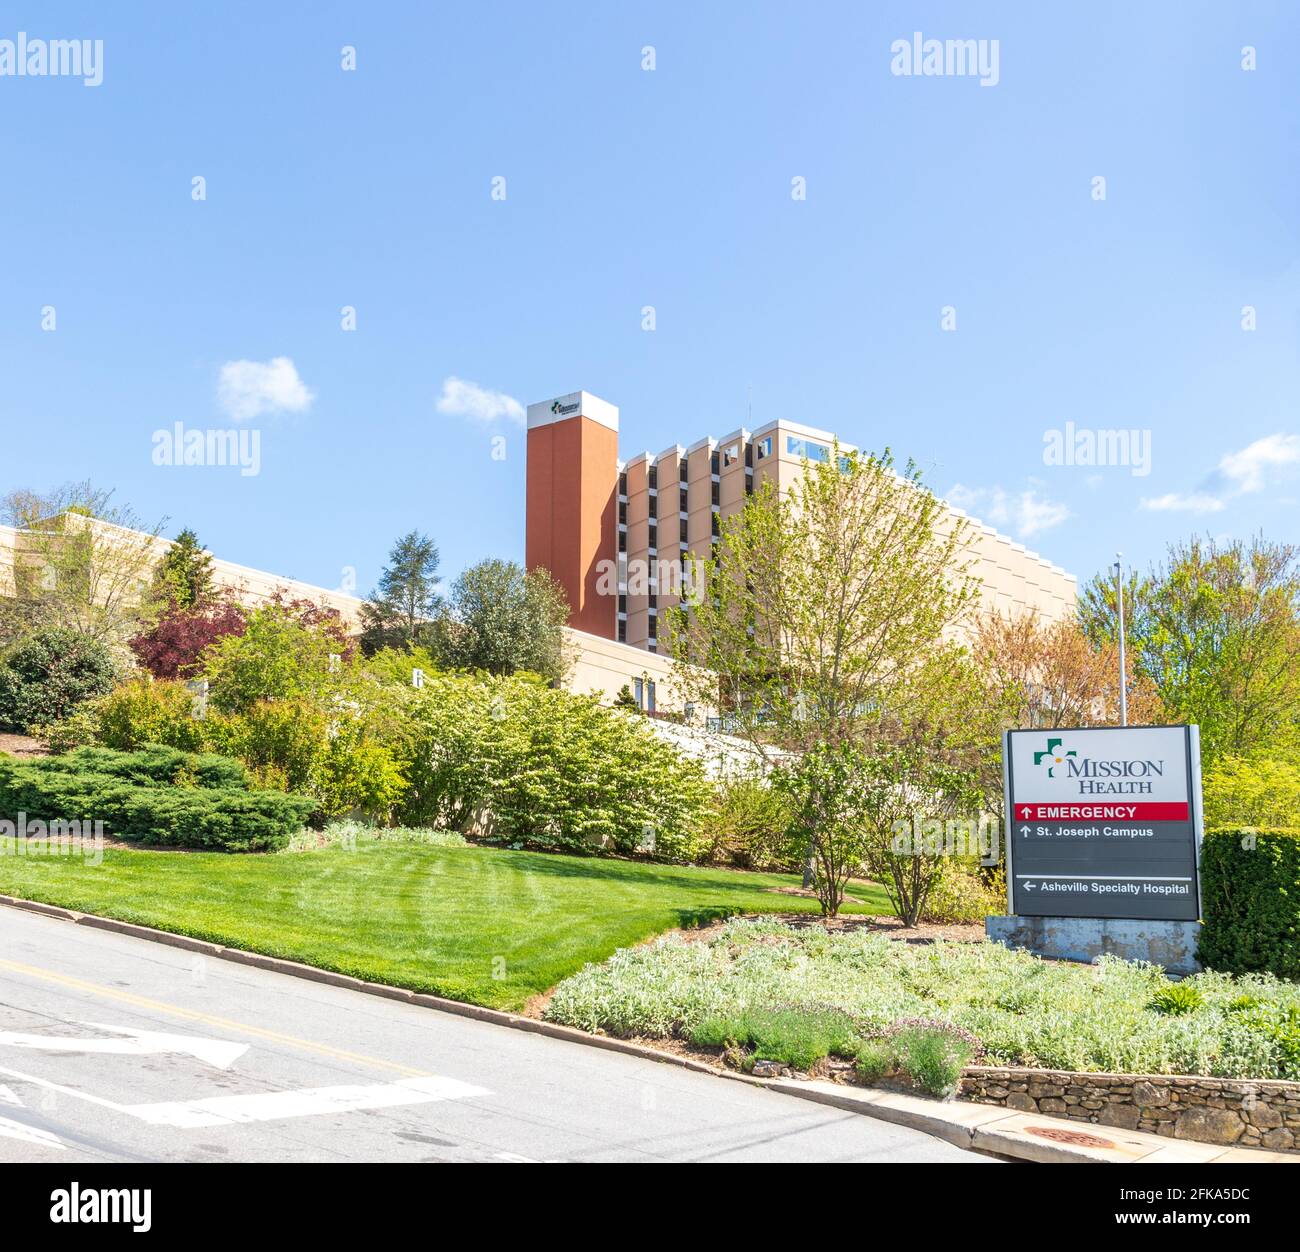 ASHEVILLE, NC, EE.UU.-25 ABRIL 2021: Entrada de emergencia de Mission Health, Campus de St. Joseph, Hospital de Especialidades de Asheville. Señal de información y edificio. Foto de stock